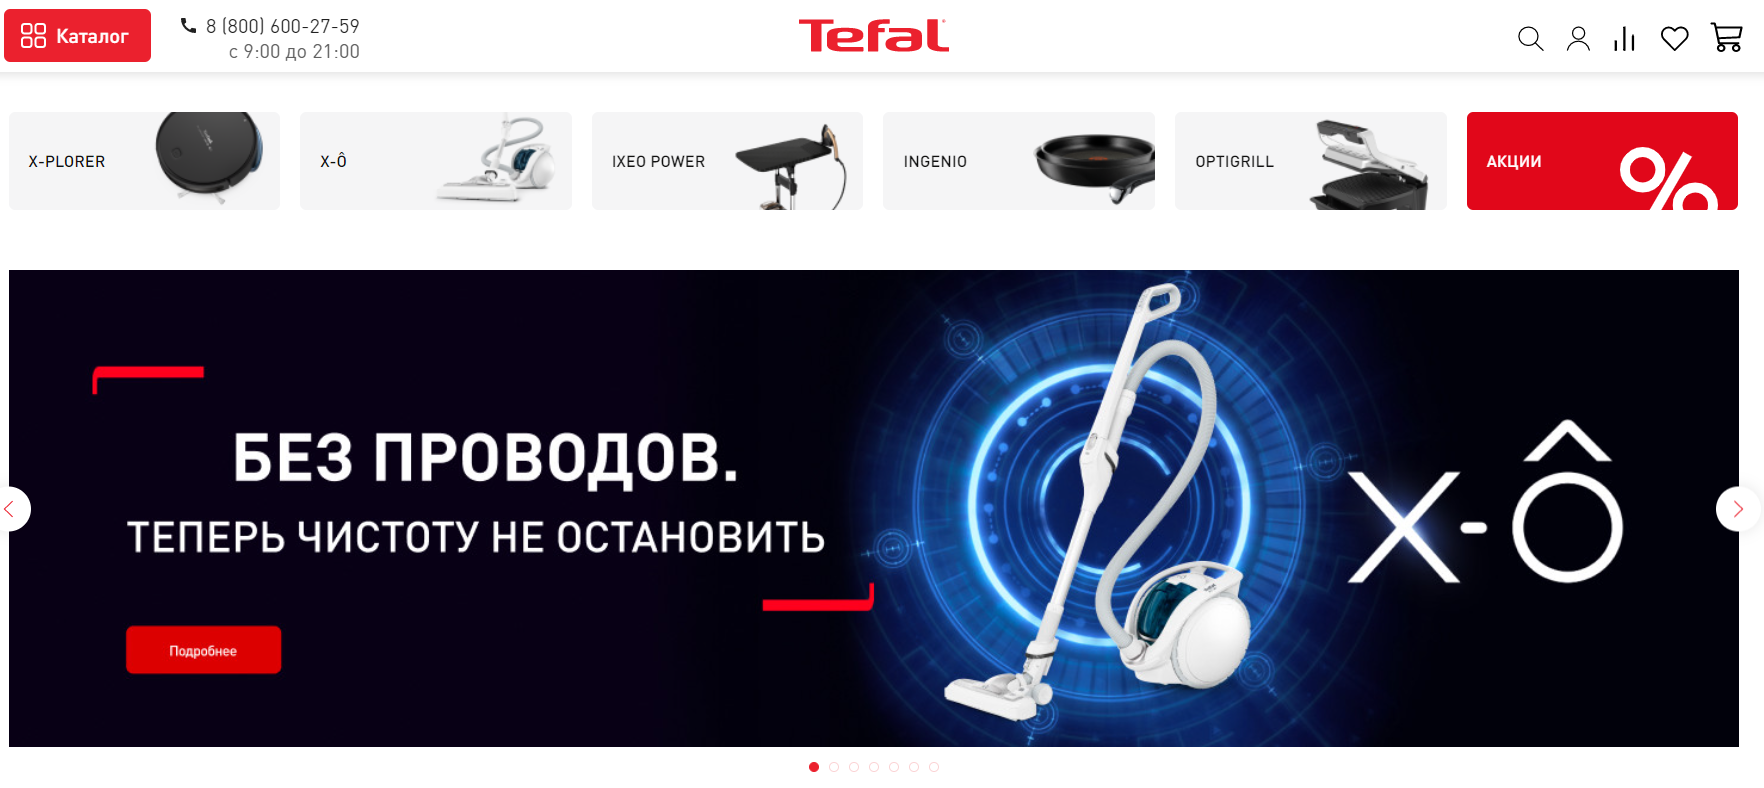 Tefal сайт интернет-магазина